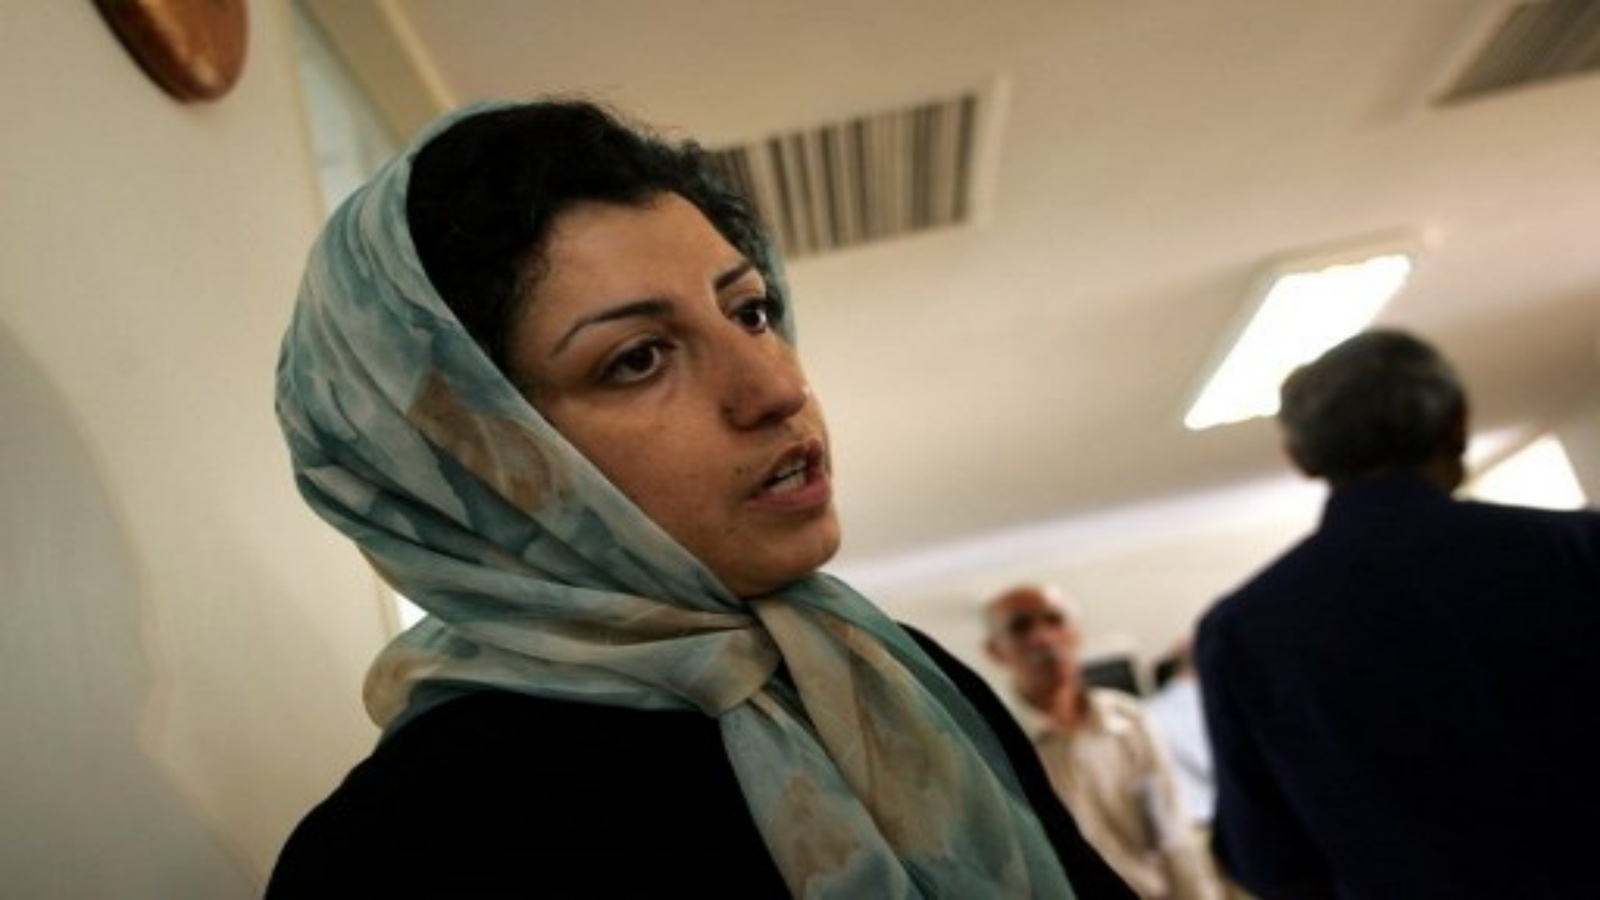 (ملفات) في هذه الصورة التي التقطت في 25 يونيو / حزيران 2007 ، تظهر الناشطة الإيرانية المعارضة في مجال حقوق الإنسان ، نرجس محمدي ، في مركز المدافعين عن حقوق الإنسان في طهران.